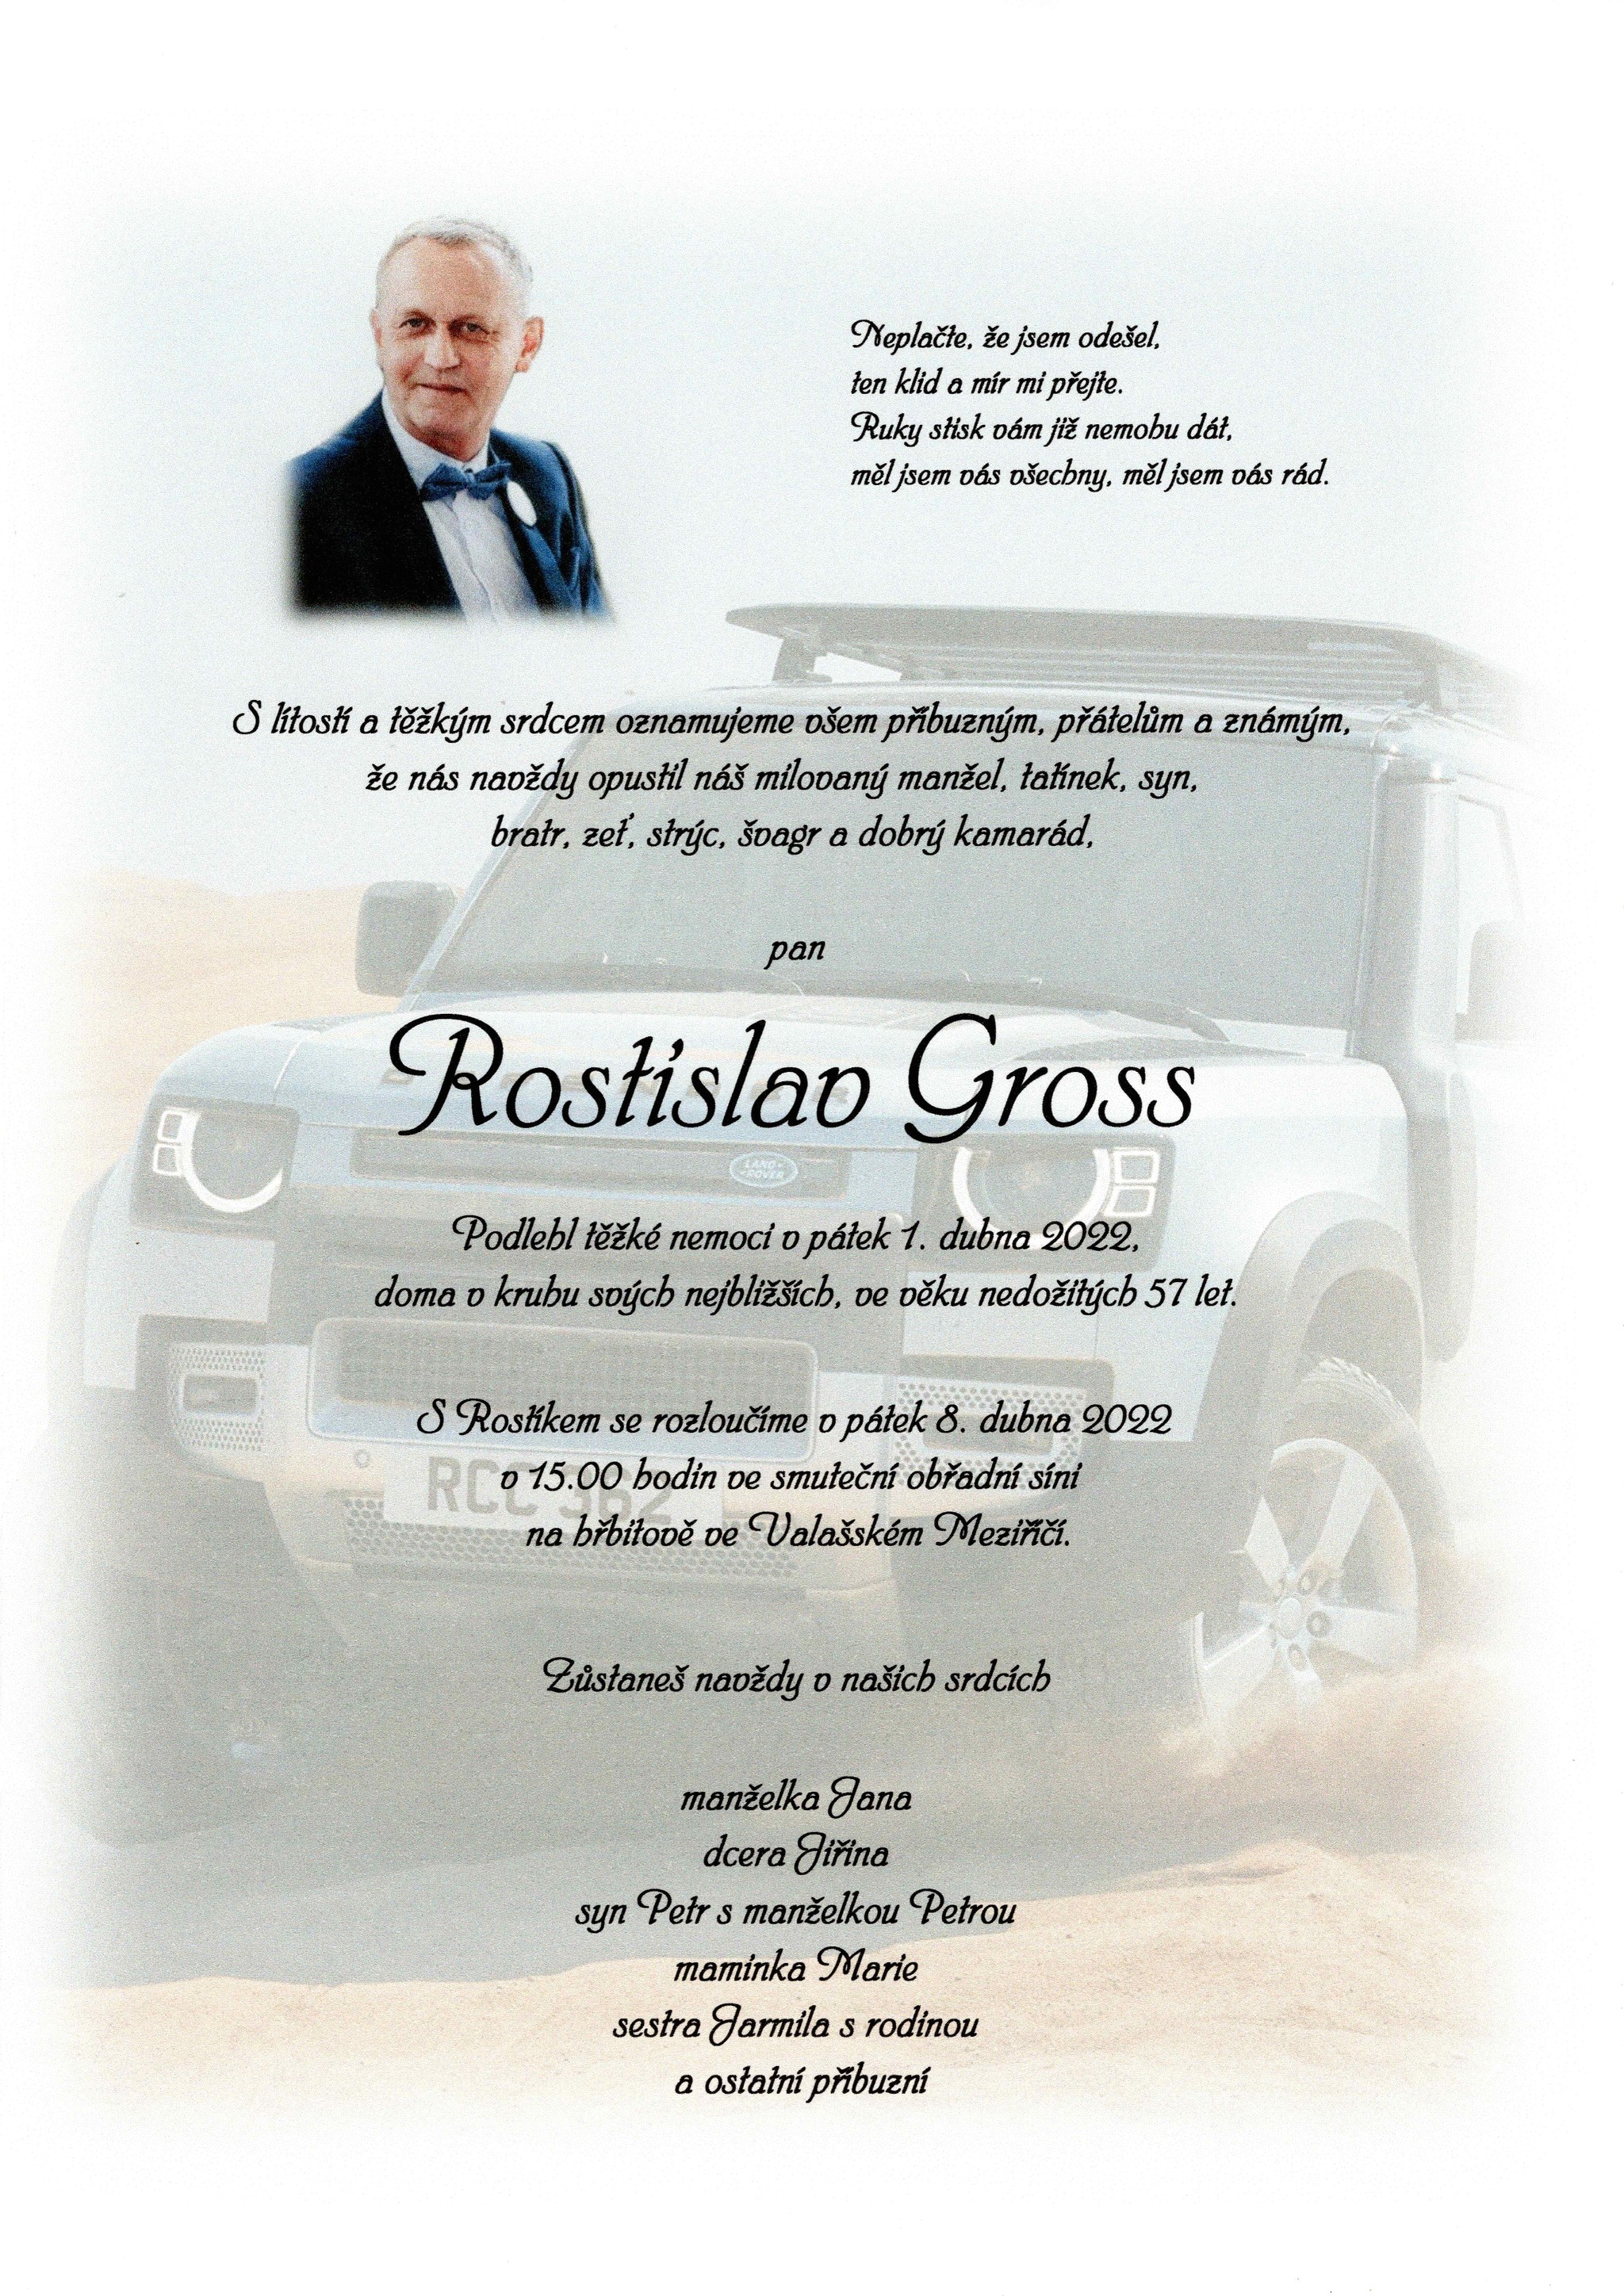 Rostislav Gross